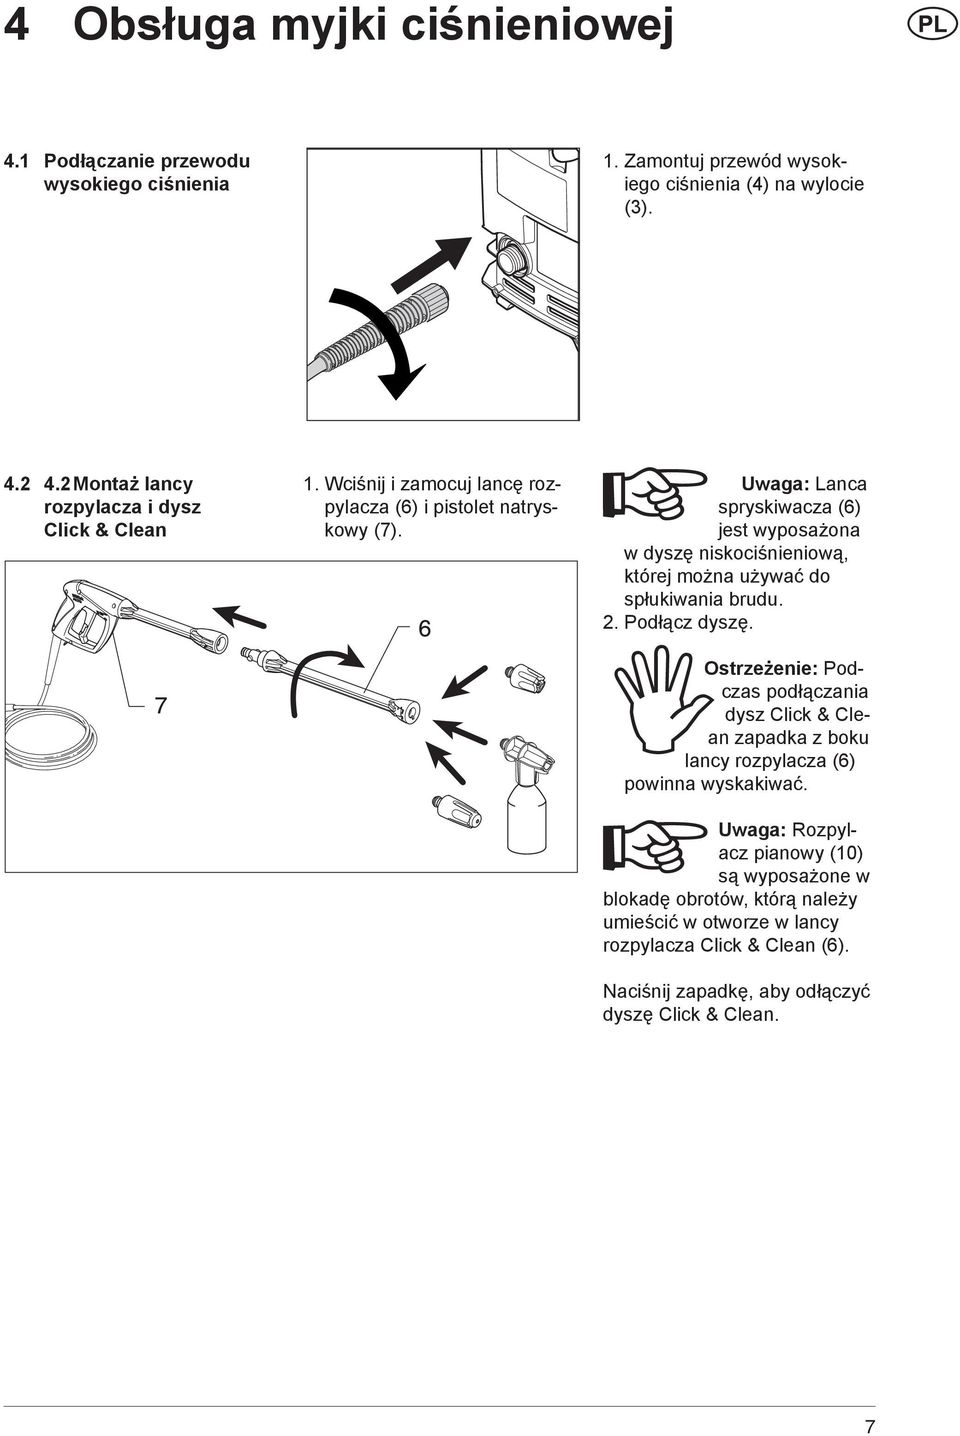 Uwaga: Lanca spryskiwacza (6) jest wyposażona w dyszę niskociśnieniową, której można używać do spłukiwania brudu. 2. Podłącz dyszę.